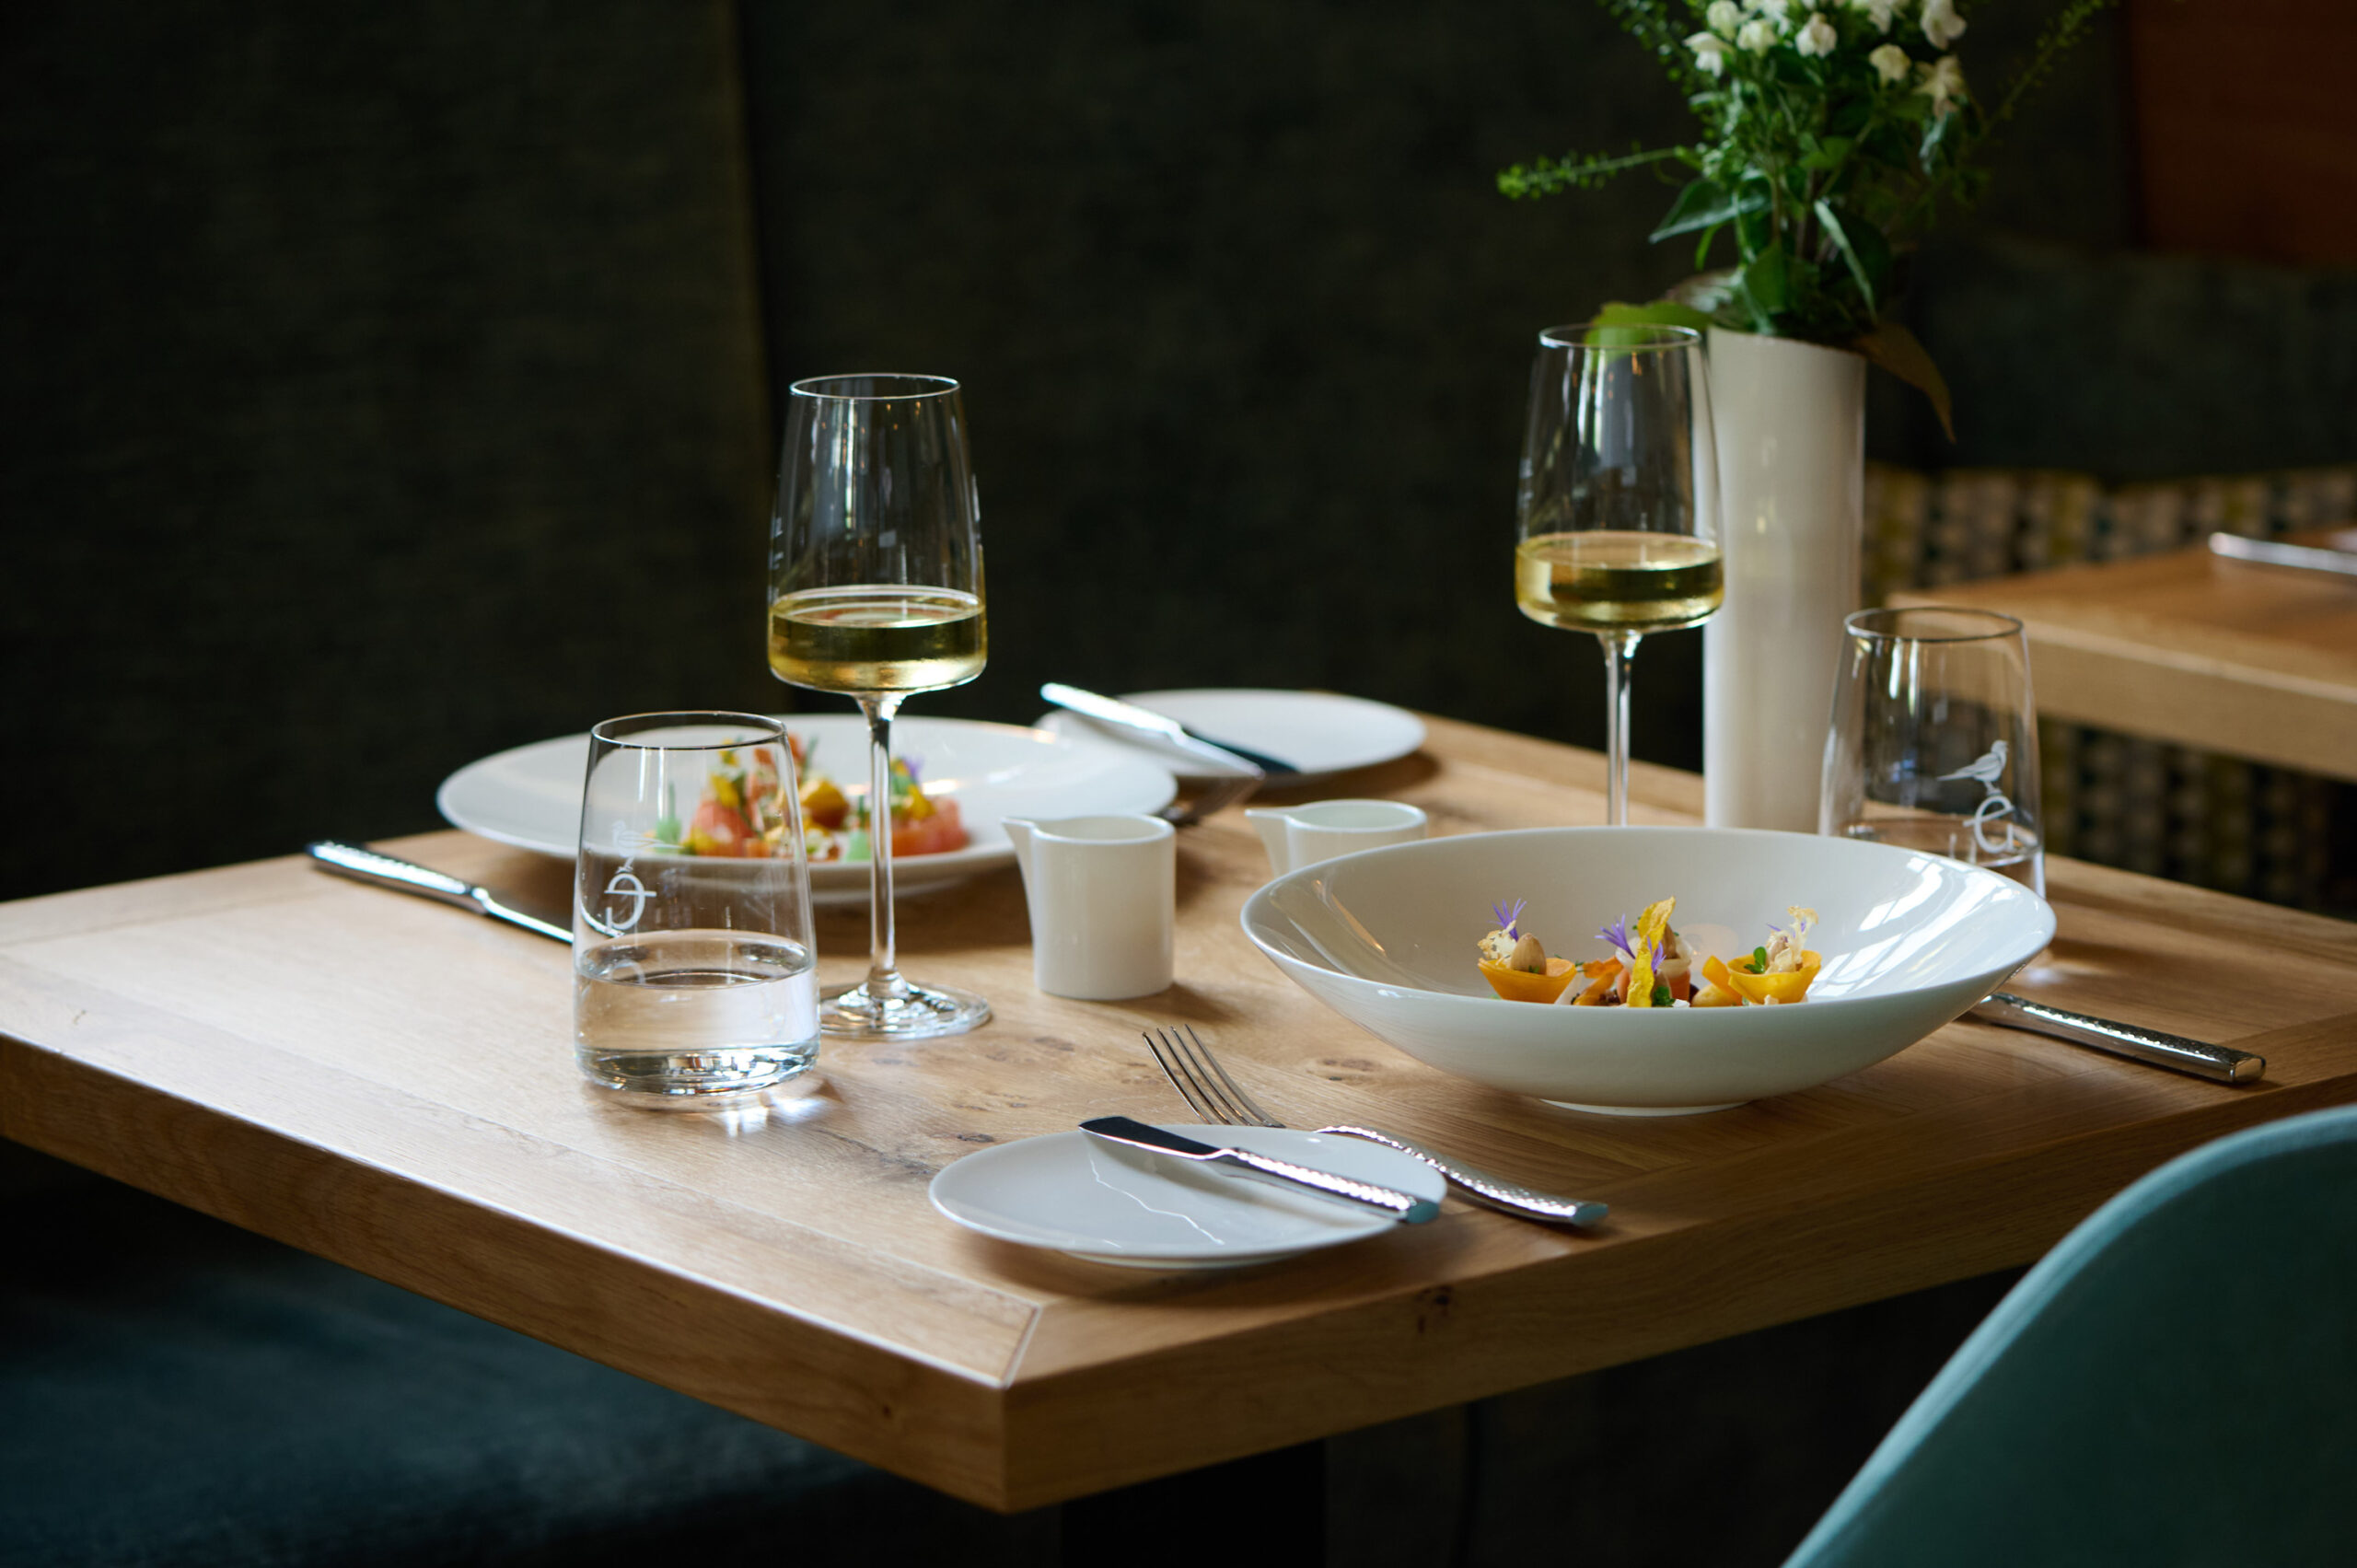 Speise in rundem, weißen, tiefen Teller mit Weißwein in einem Glas. Im Hintergrund steht eine Blume.